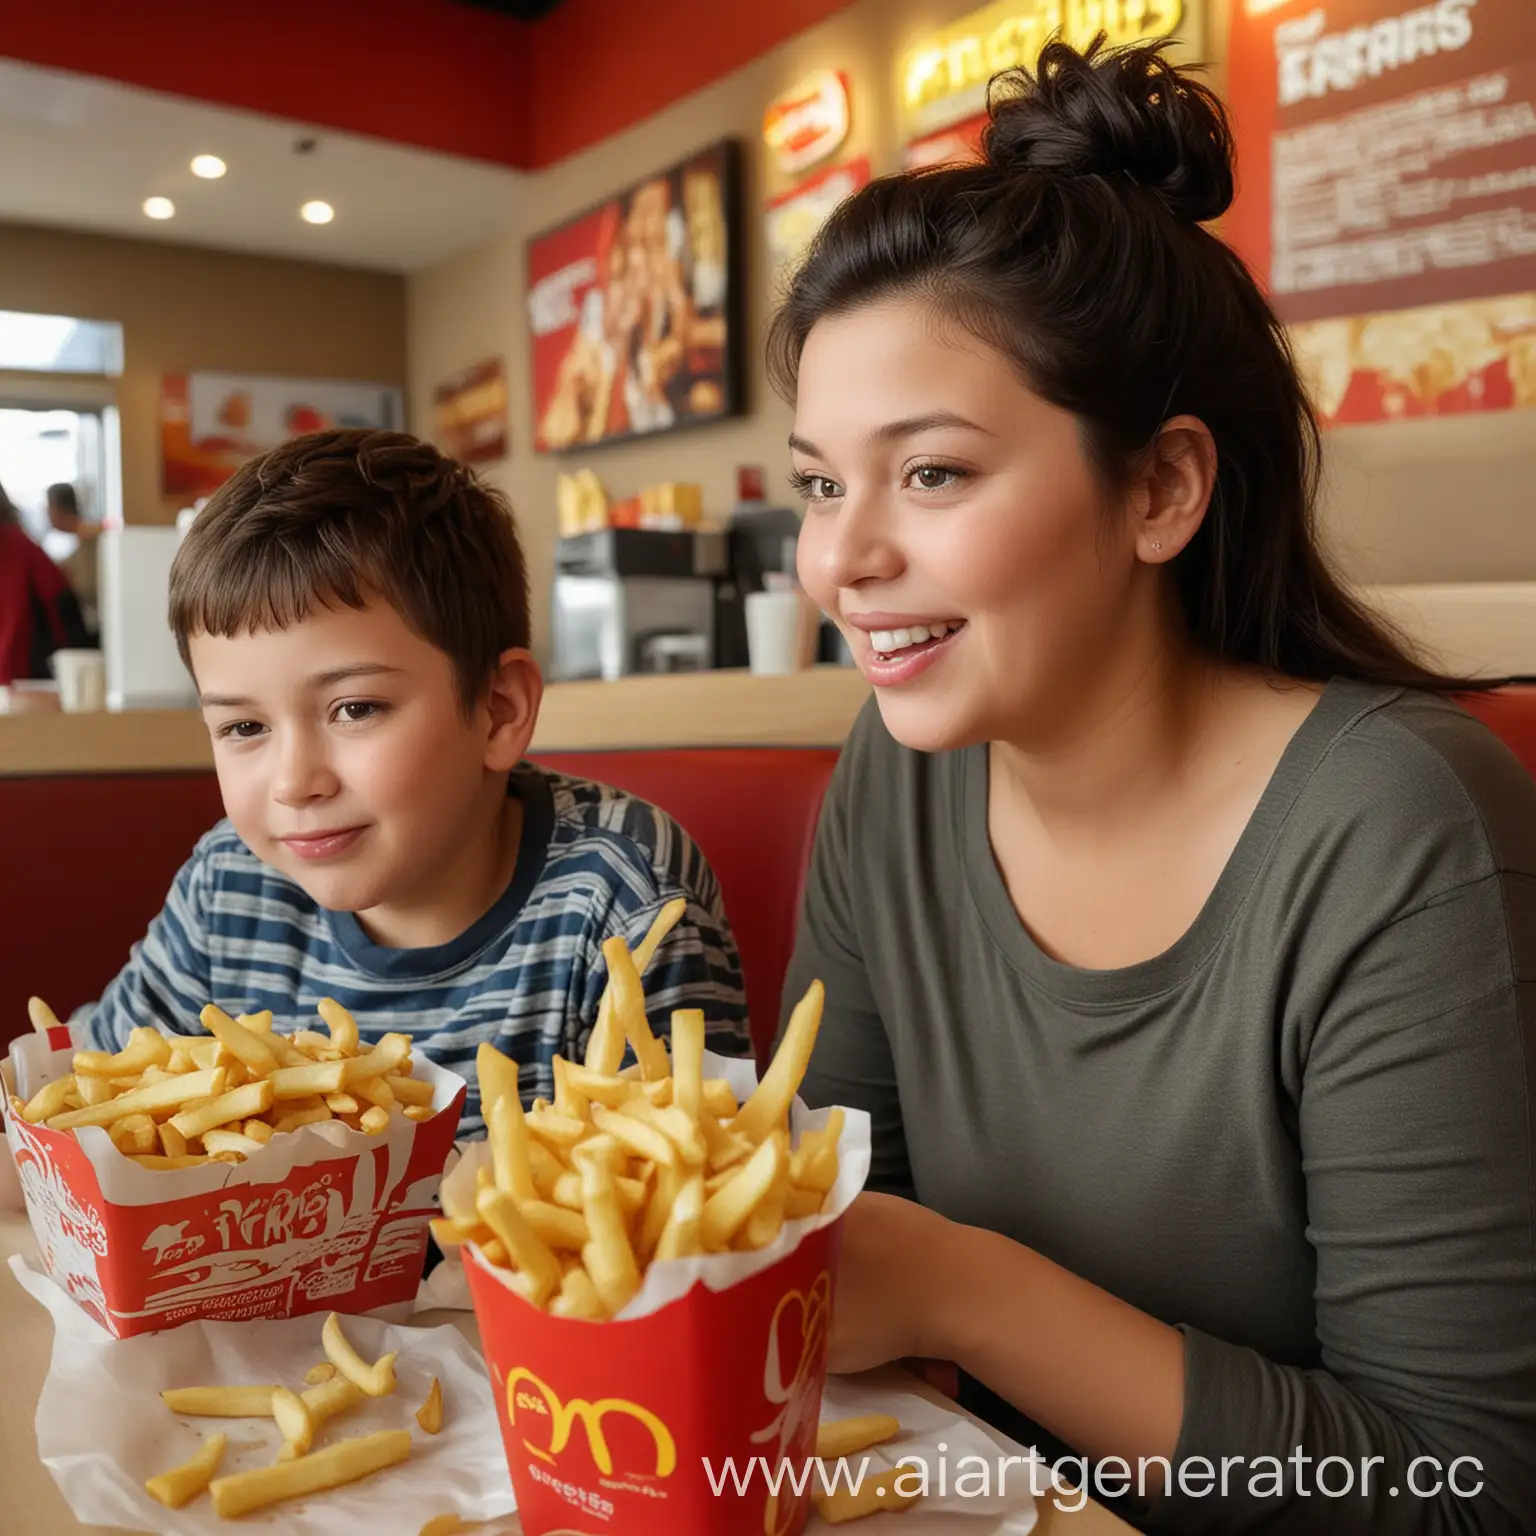 Реальная фотография. Мальчик с мамой сидит в ресторане фастфуда и ест картошку фри. Мальчику 10 лет, маме 35 лет. У мамы короткие чёрные волосы. Мама полная.